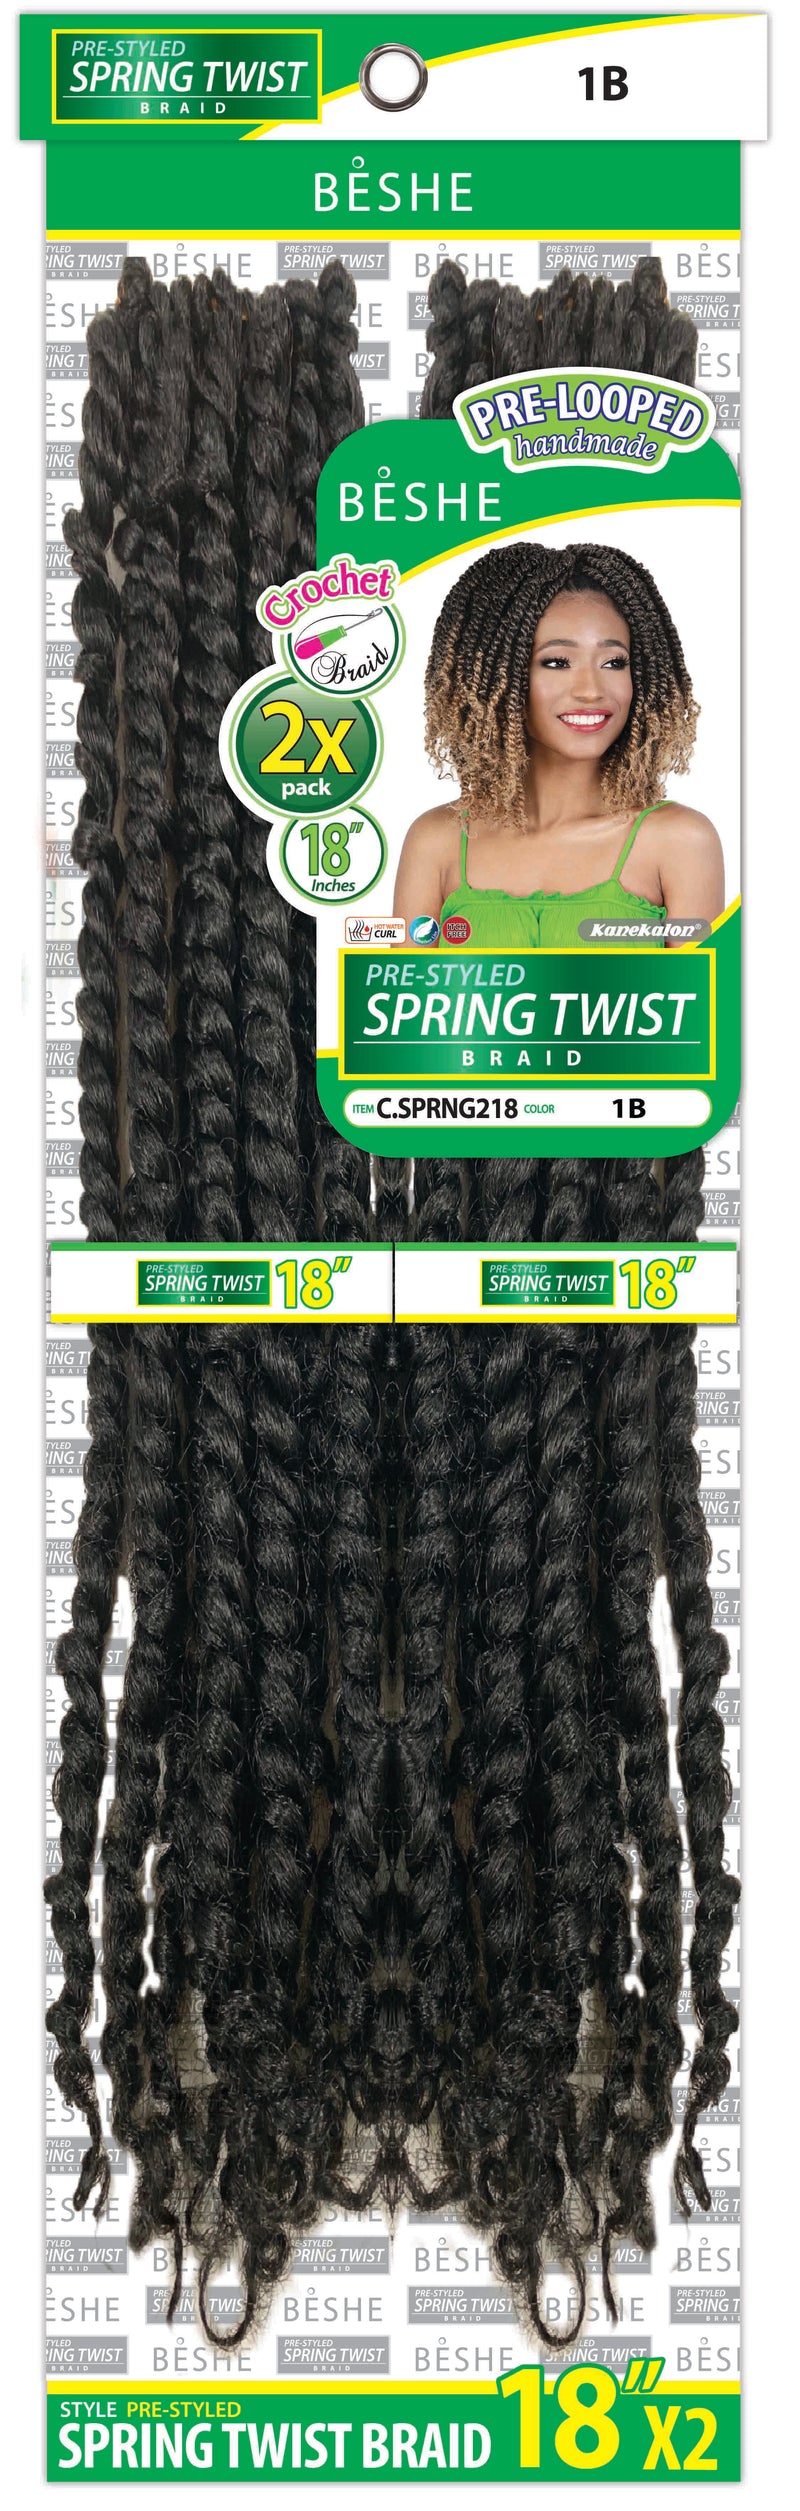 Beshe Crochet 2x Pre-Looped 18" SPRING TWIST Braid C.SPRING 218 - Elevate Styles